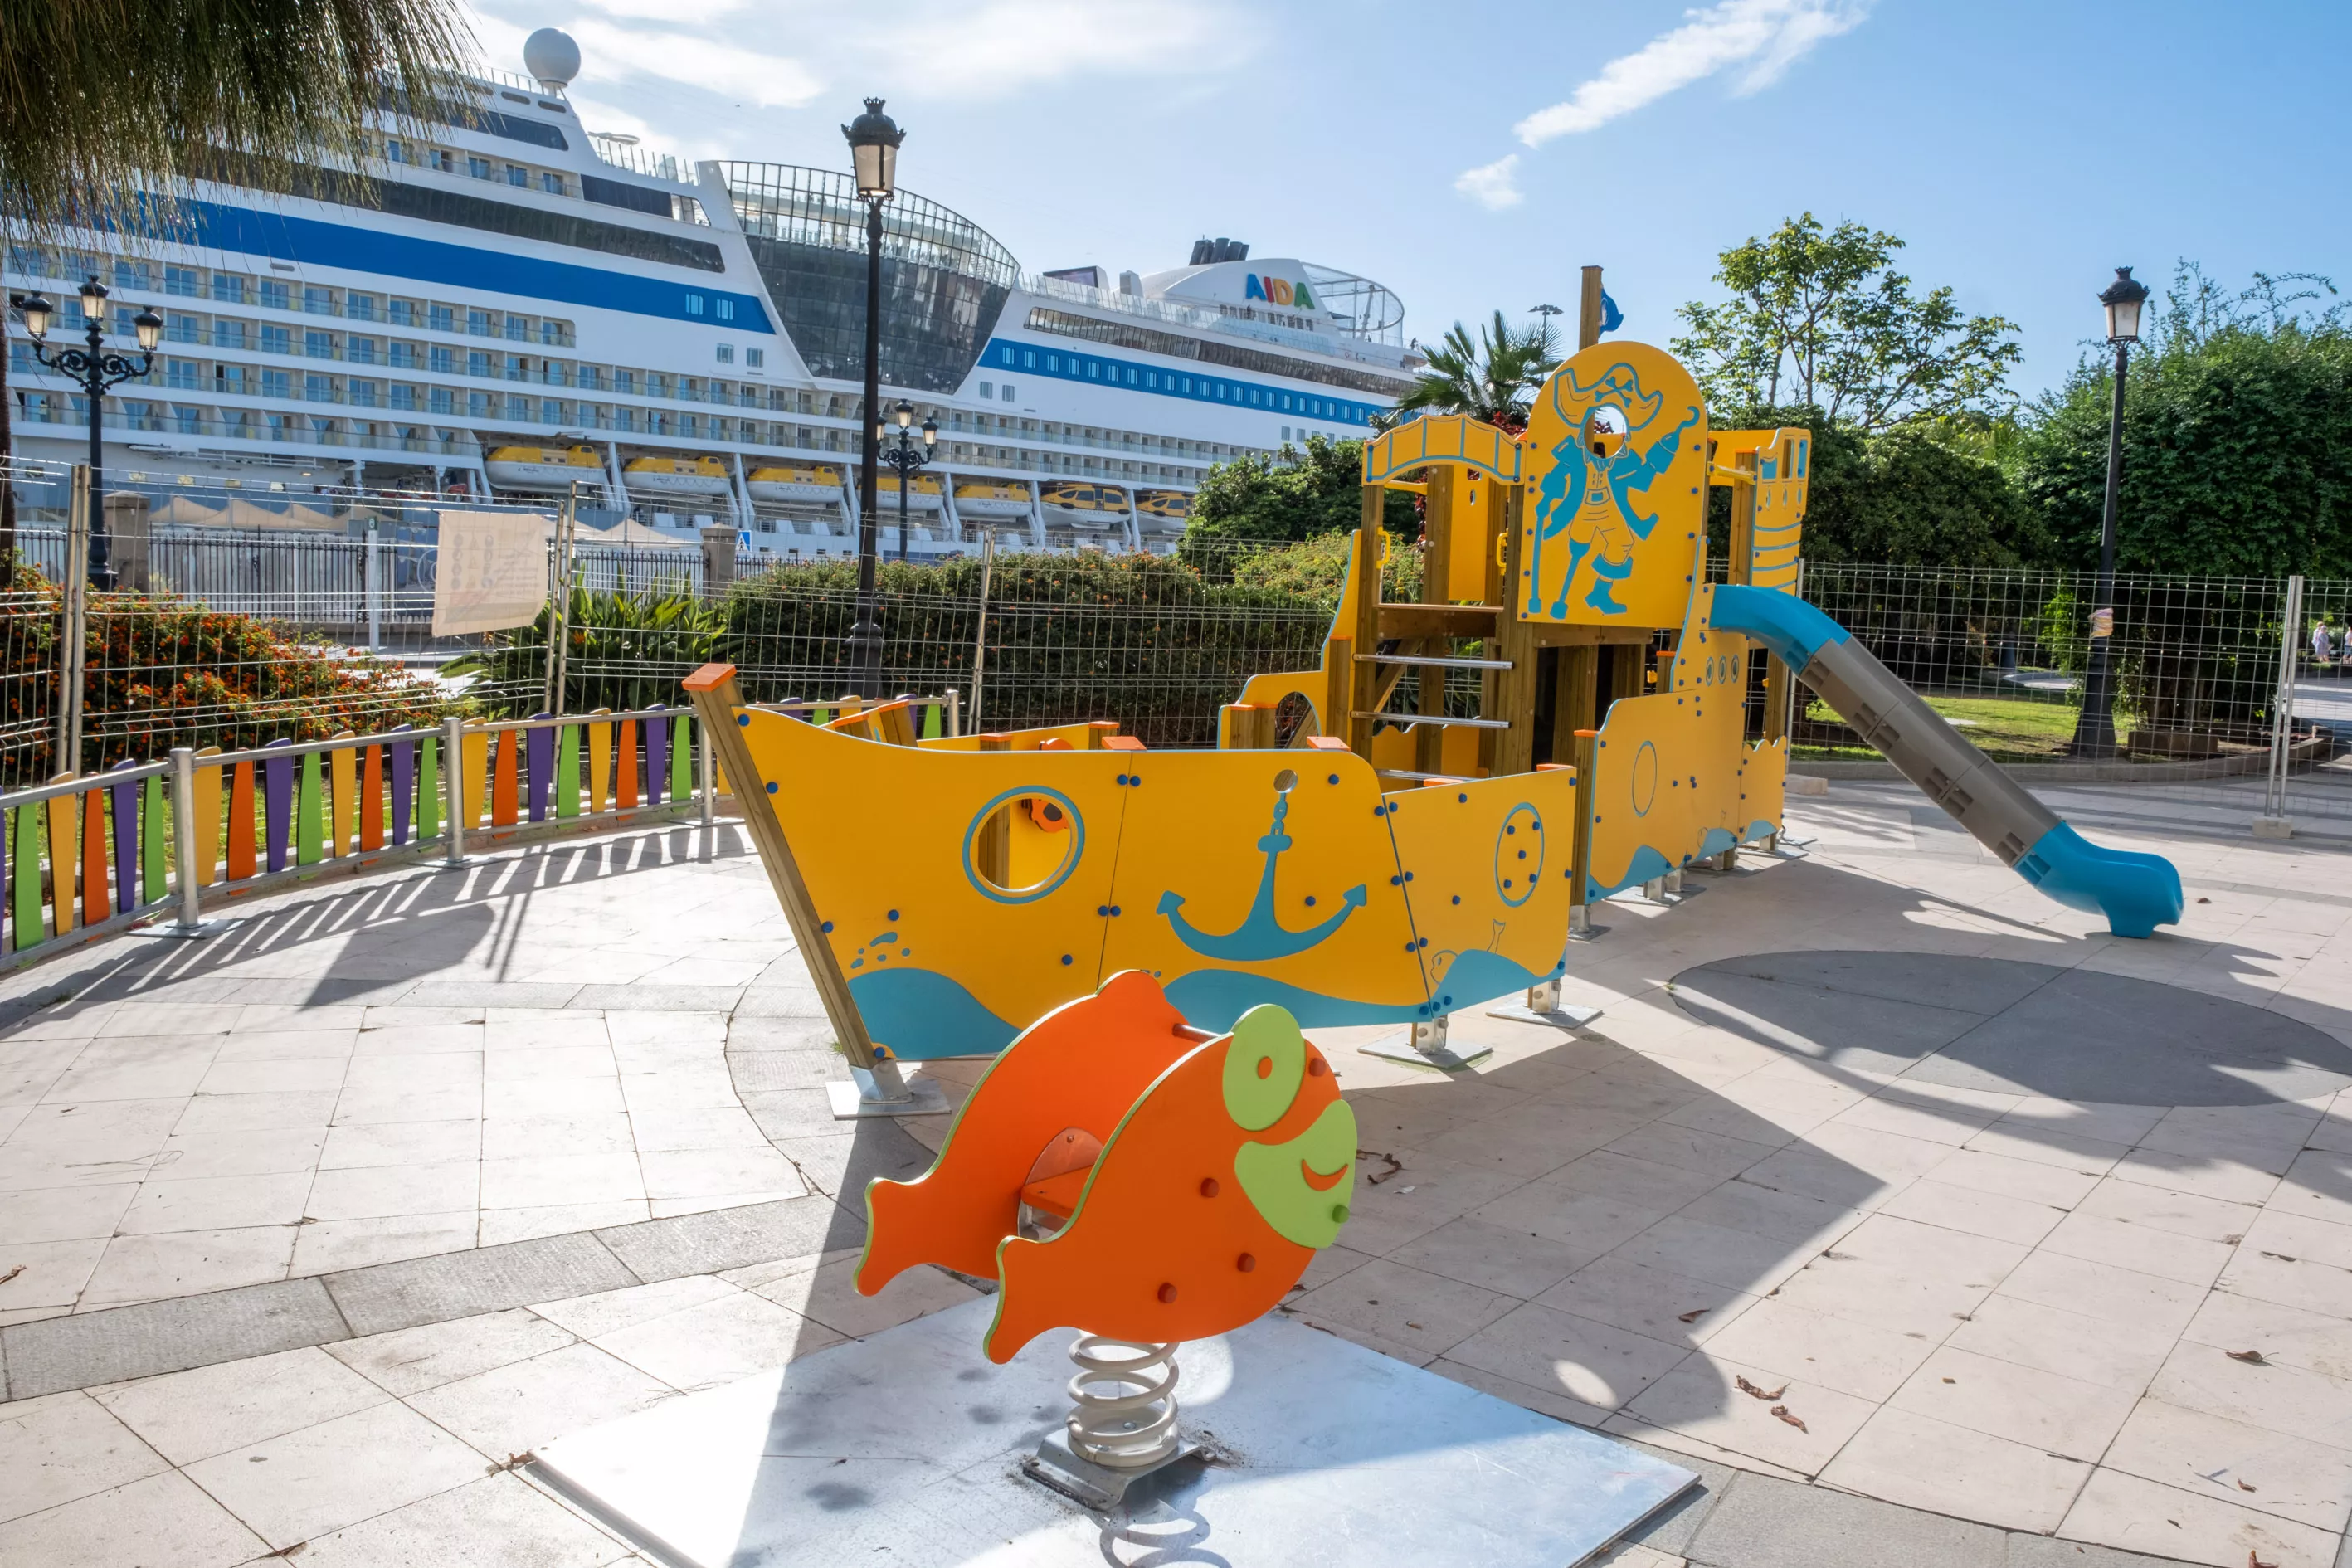 El barco pirata dispone de juegos didácticos adaptados para niños con diversidad funcional